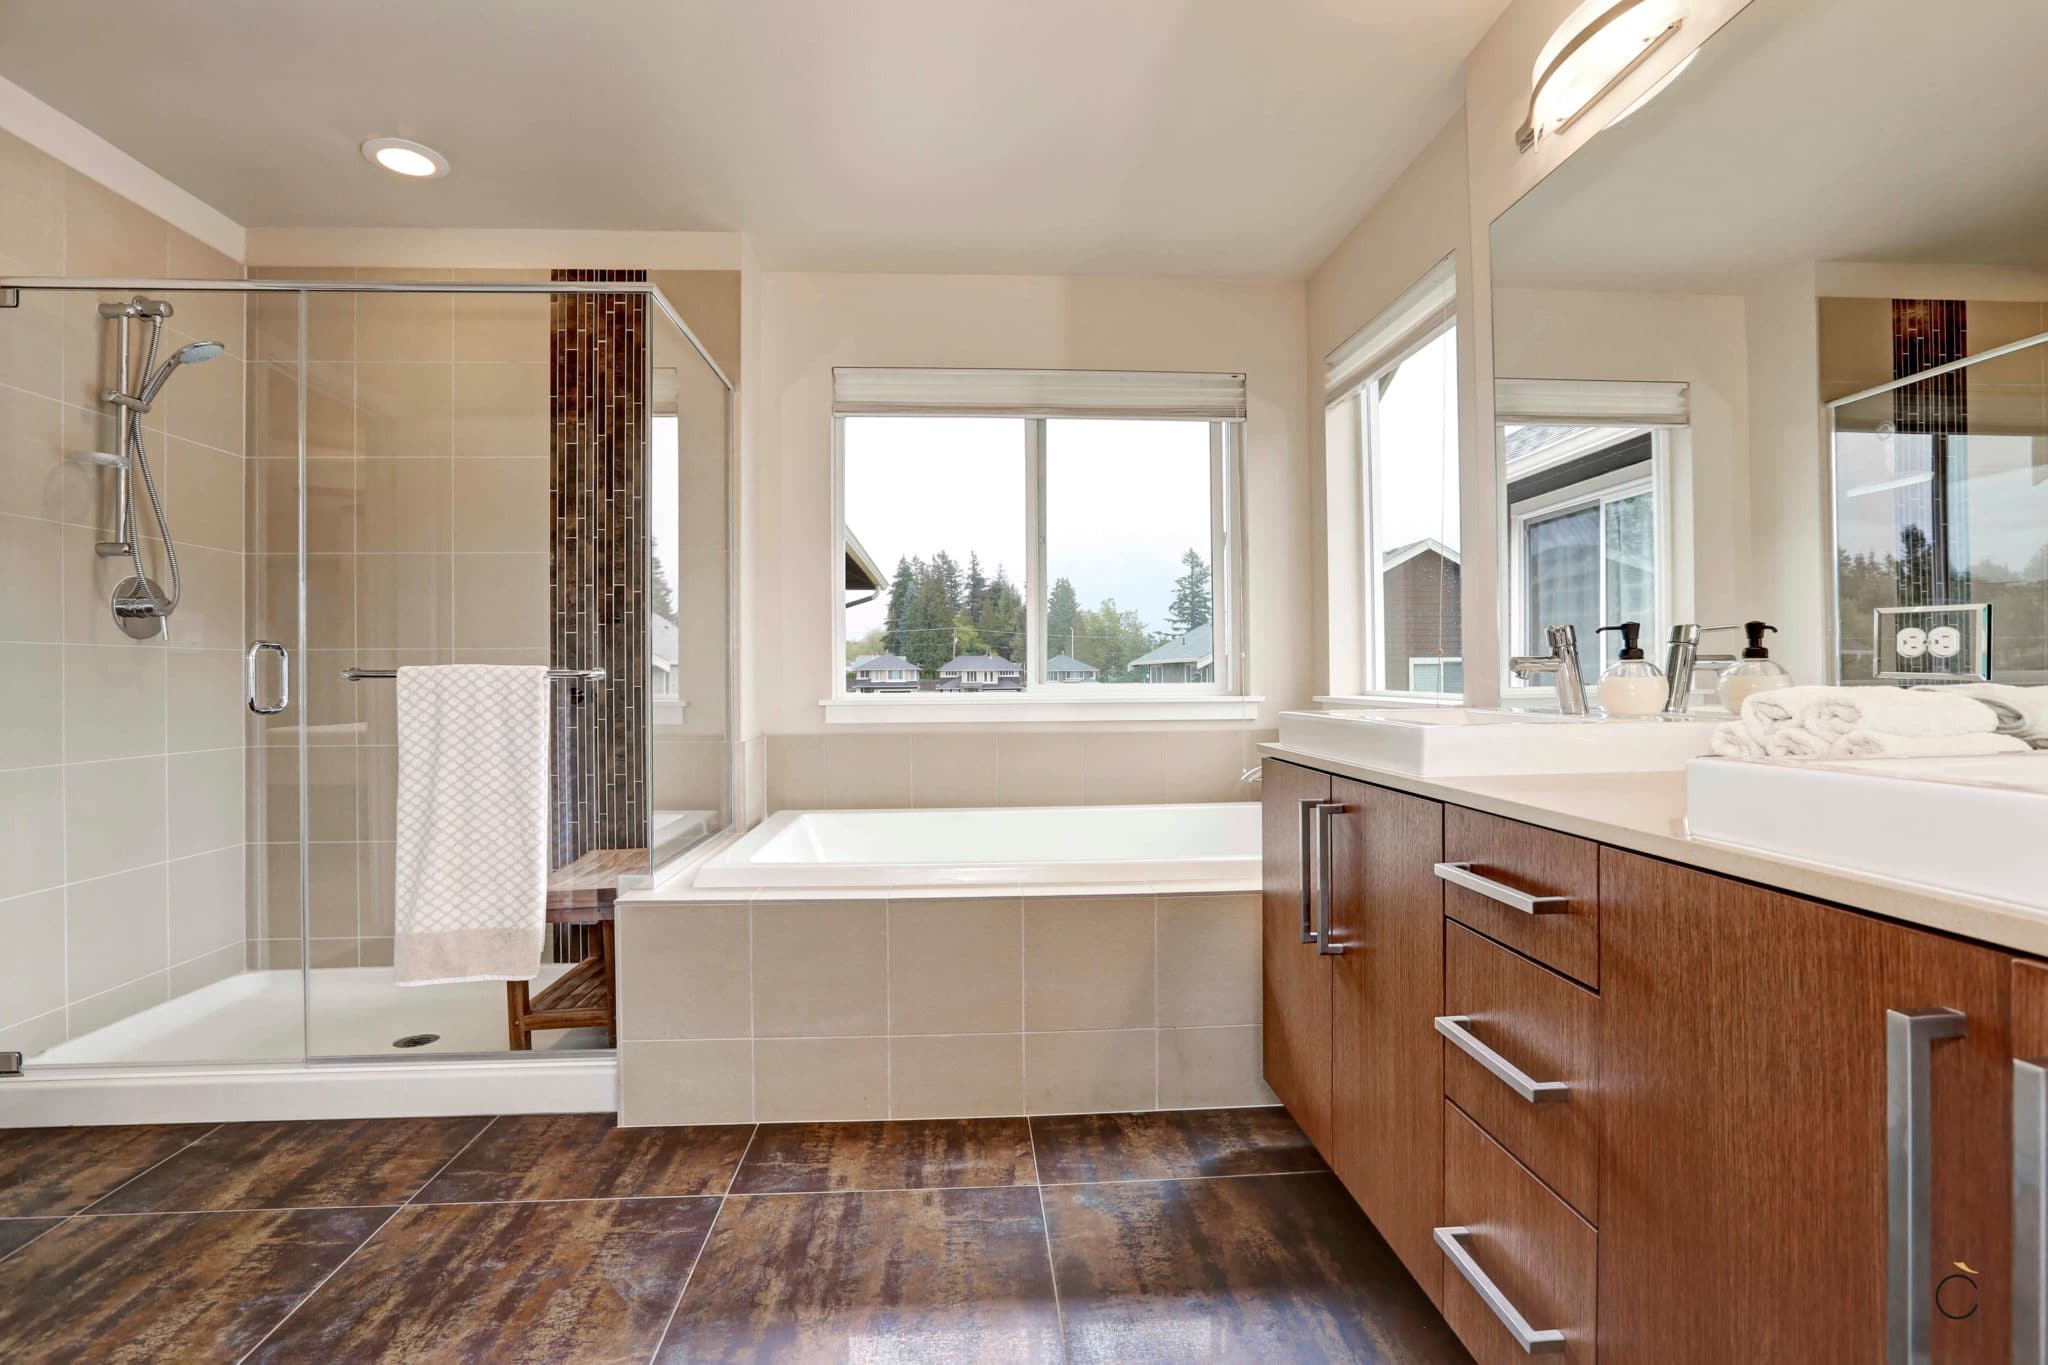 Moderno baño a medida con mueble de madera y dos senos, ducha y bañera independientes - baños a medida